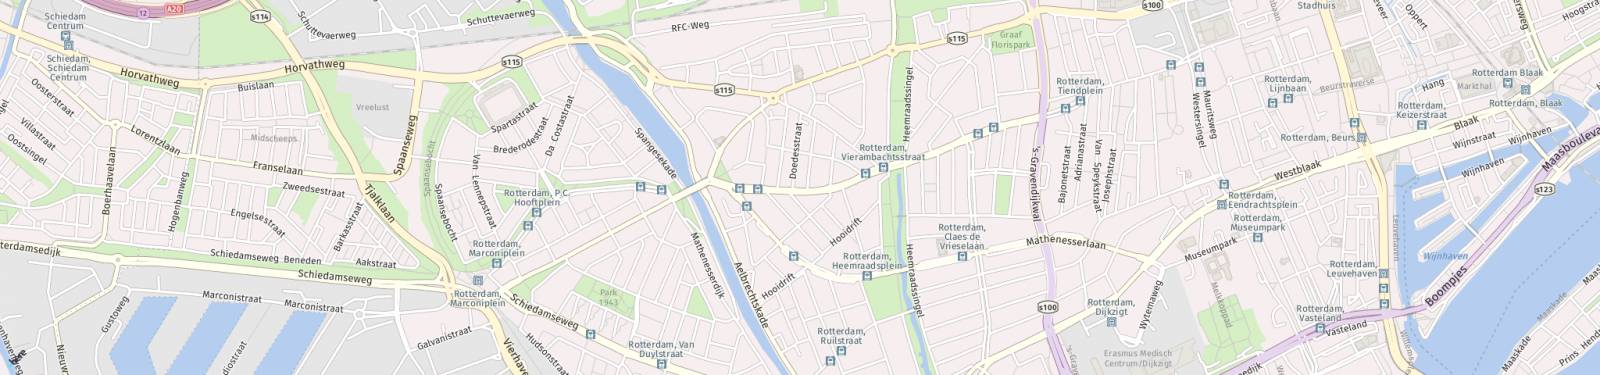 Kaart met locatie Appartement Vierambachtsstraat 